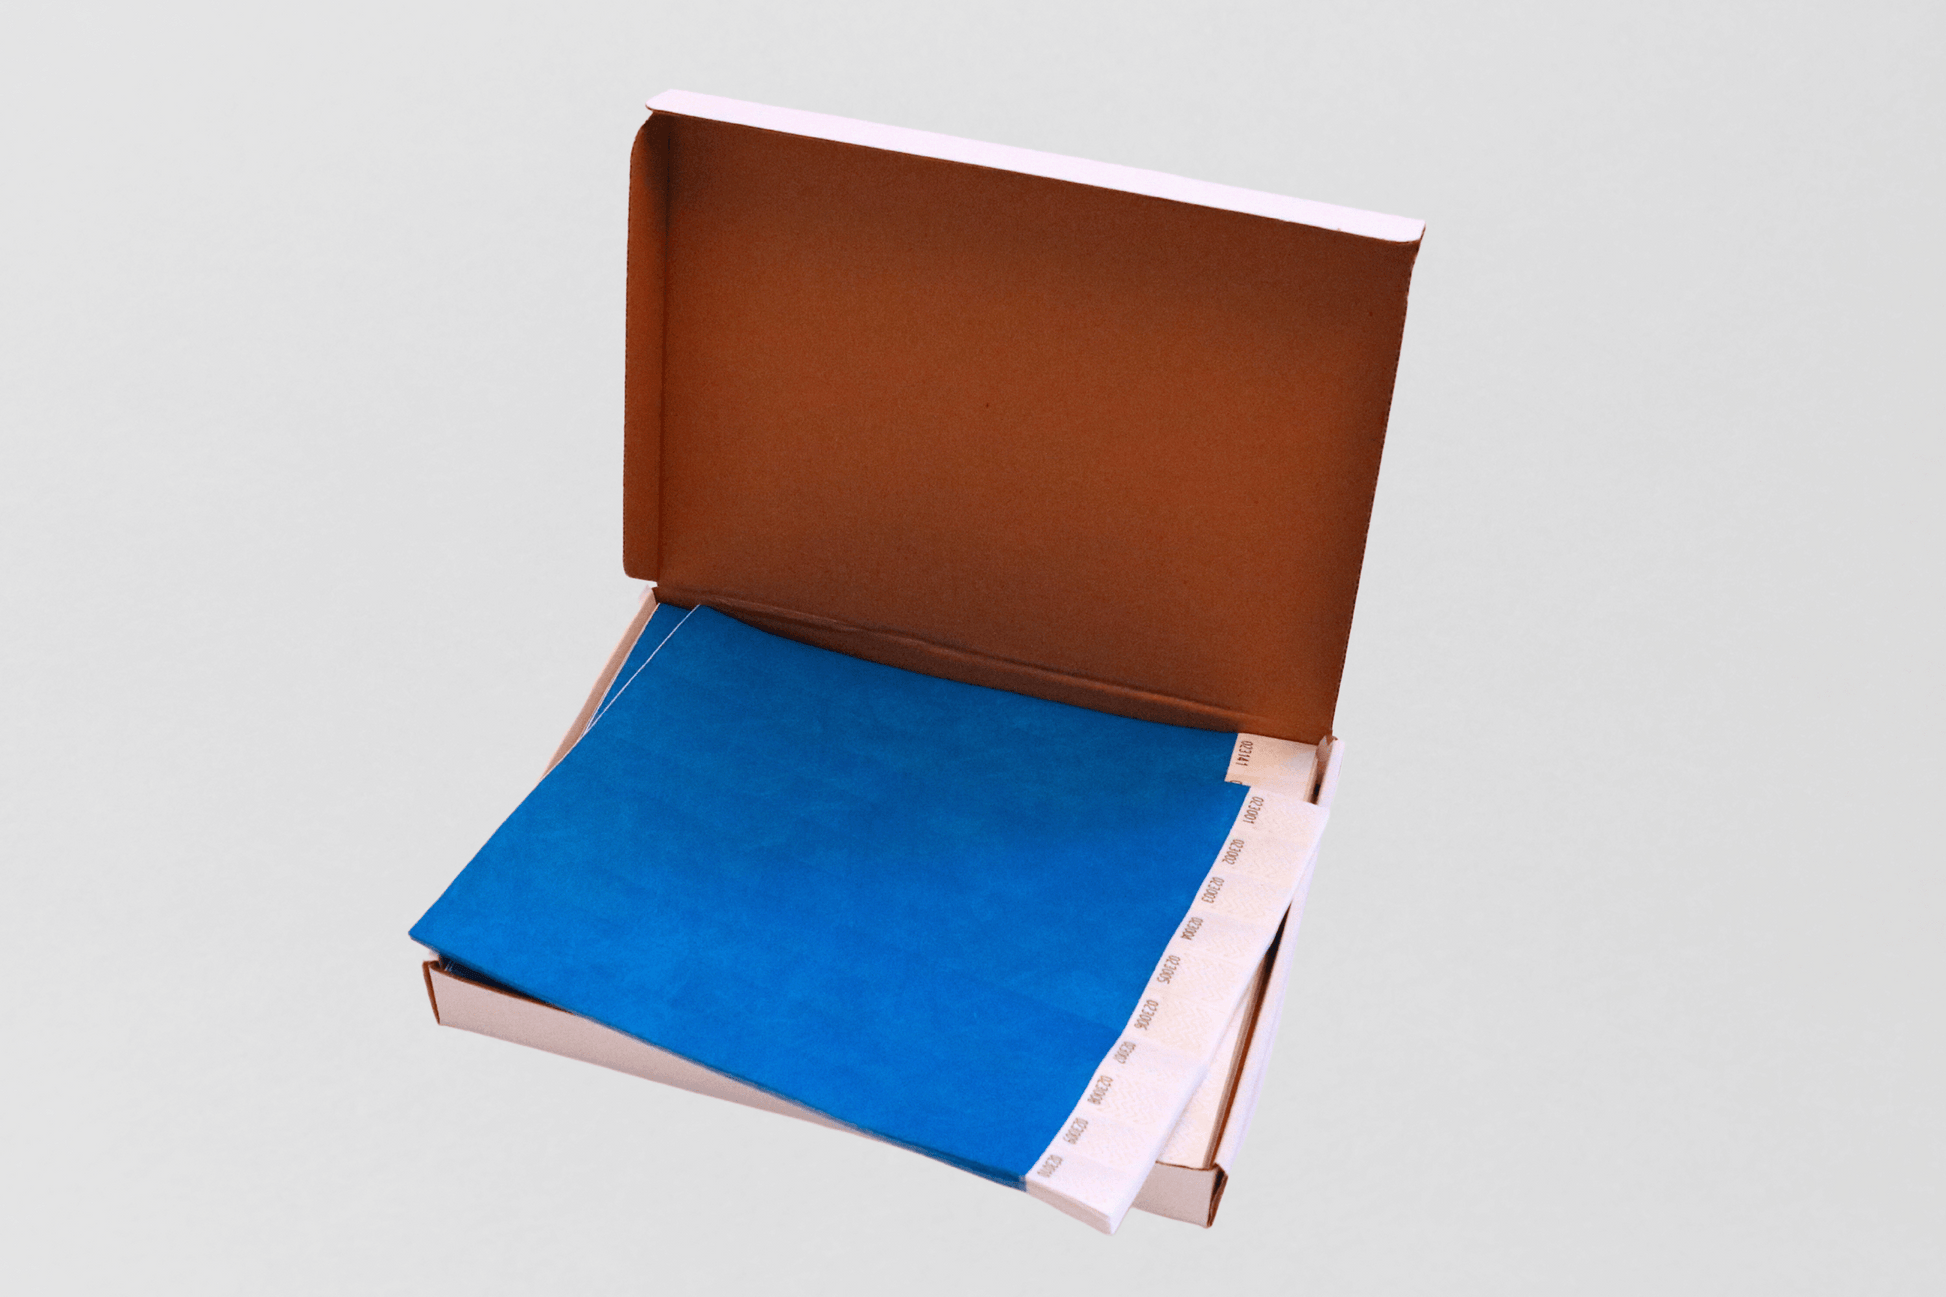 En Pappers armbandslåda med 1000- vanligt lager i brun låda.